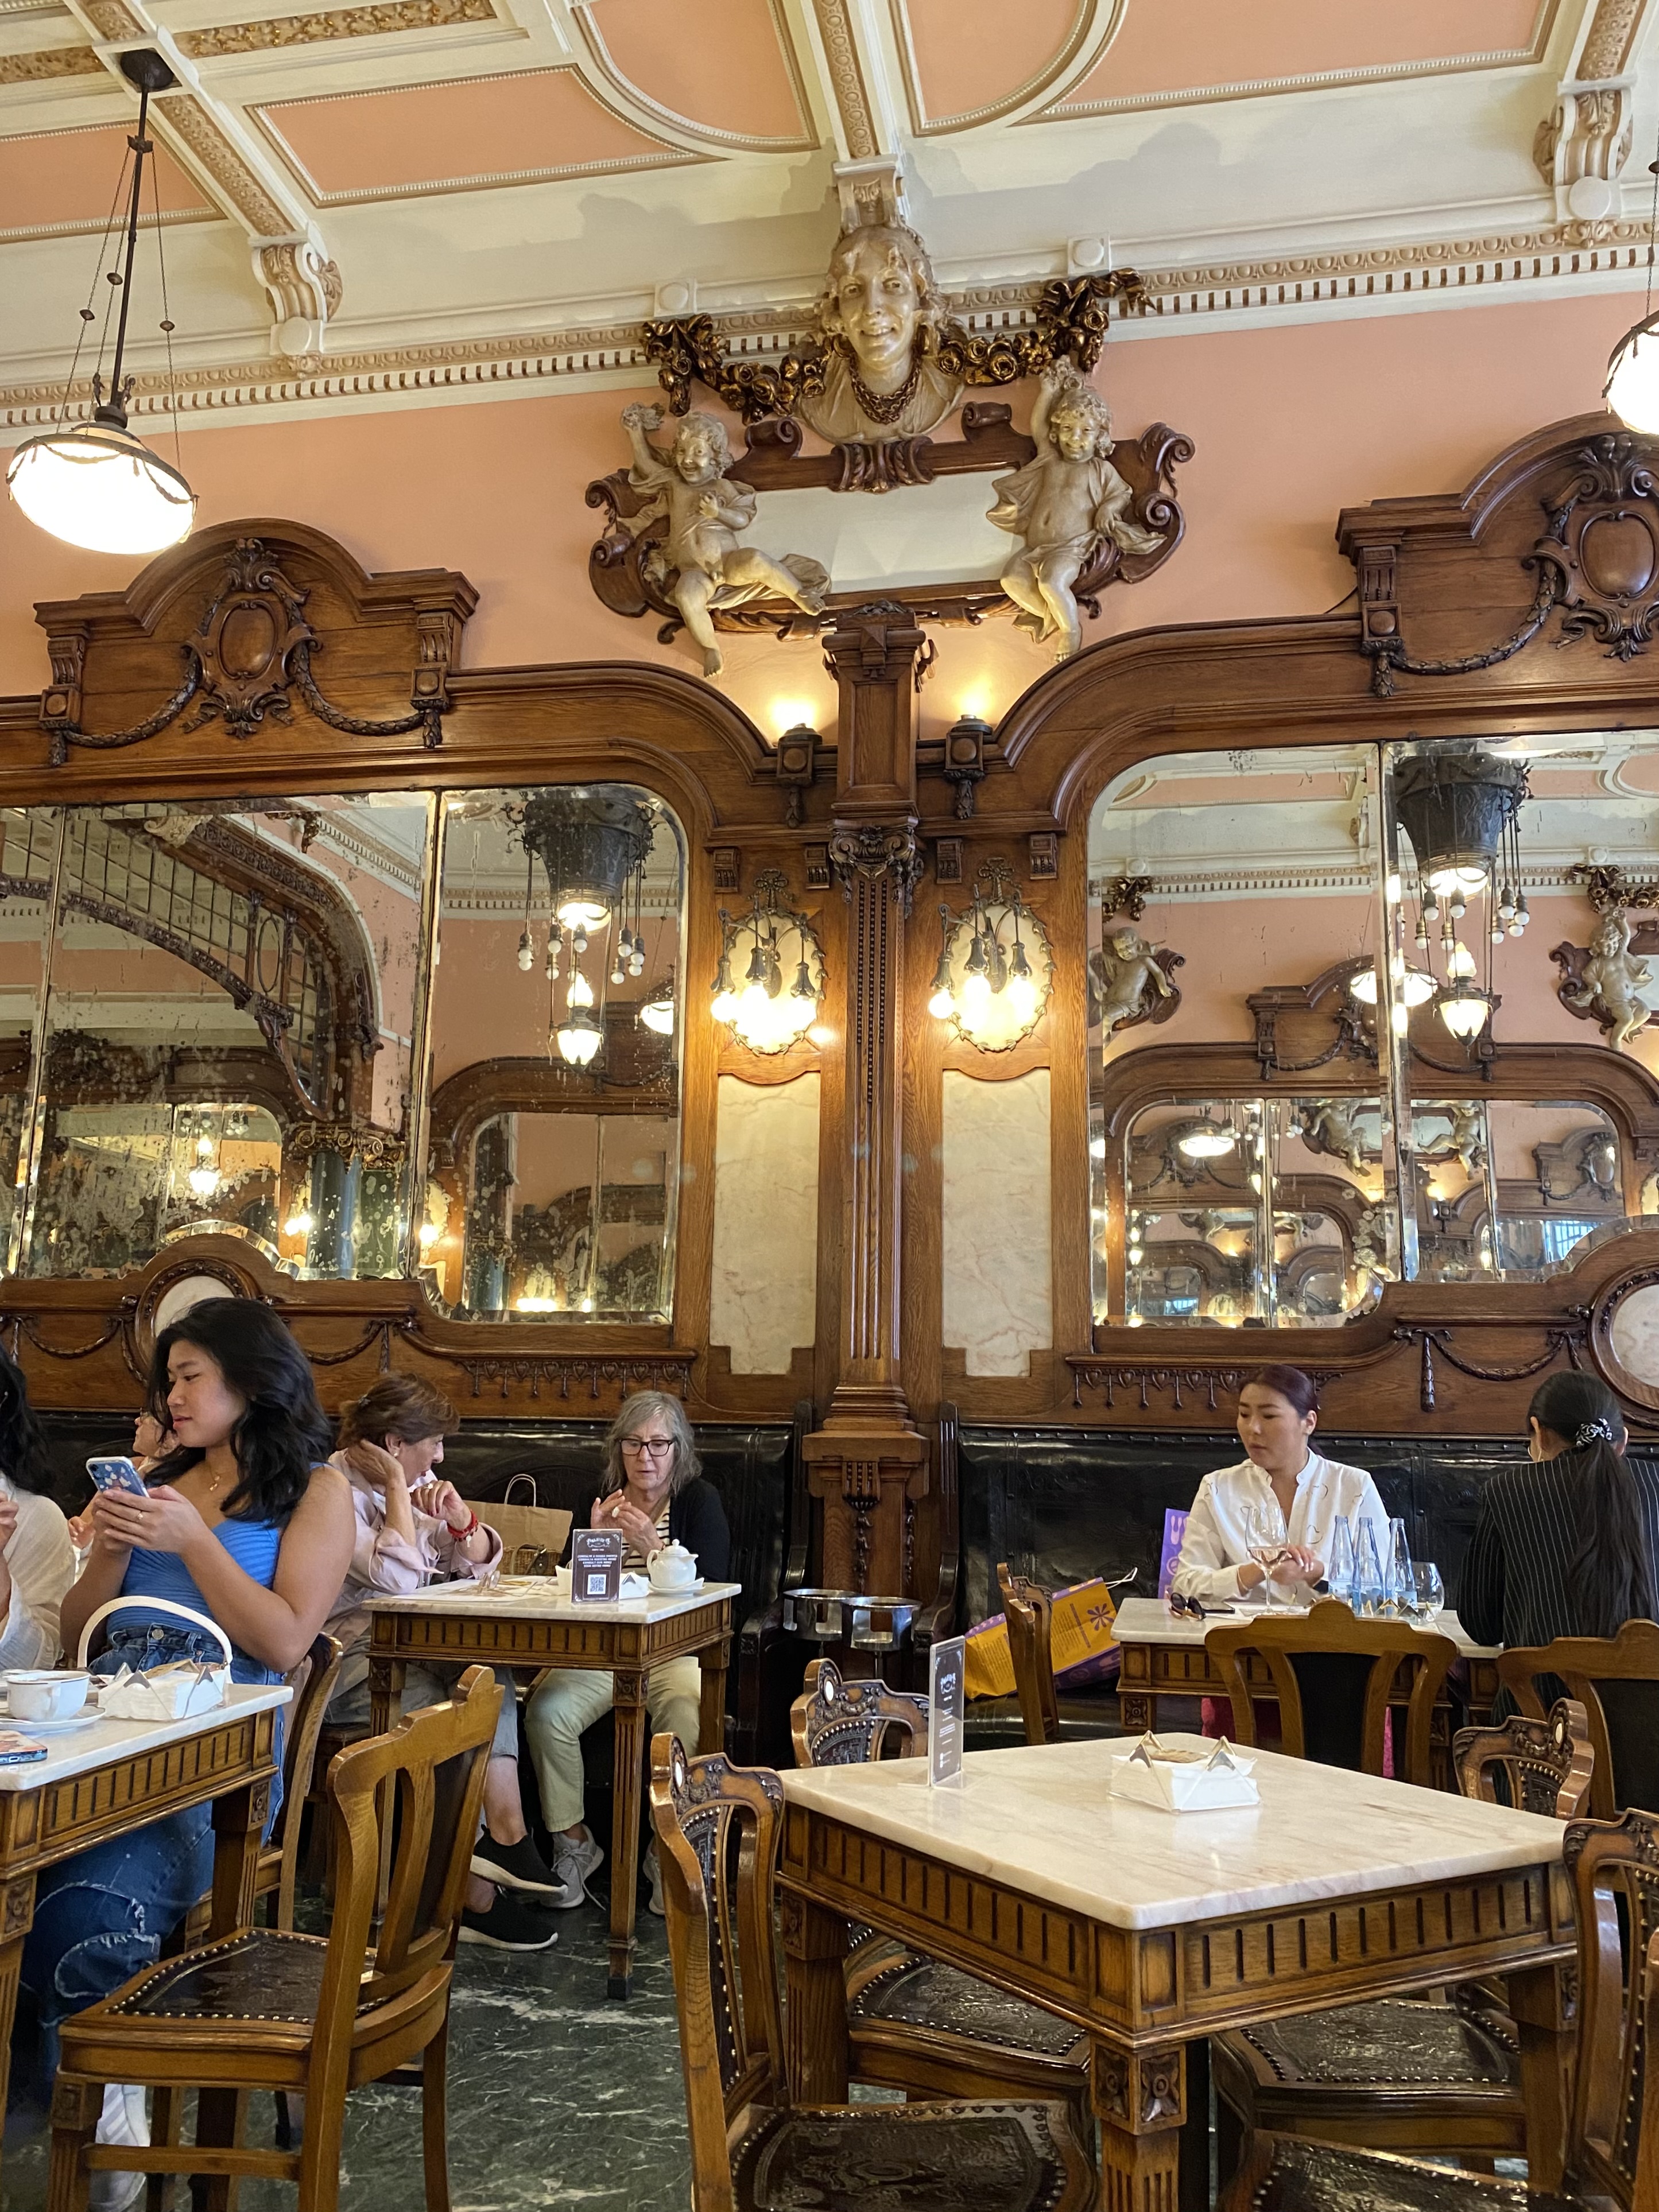 Art deco interior of Majestic Cafe in Porto Portugal